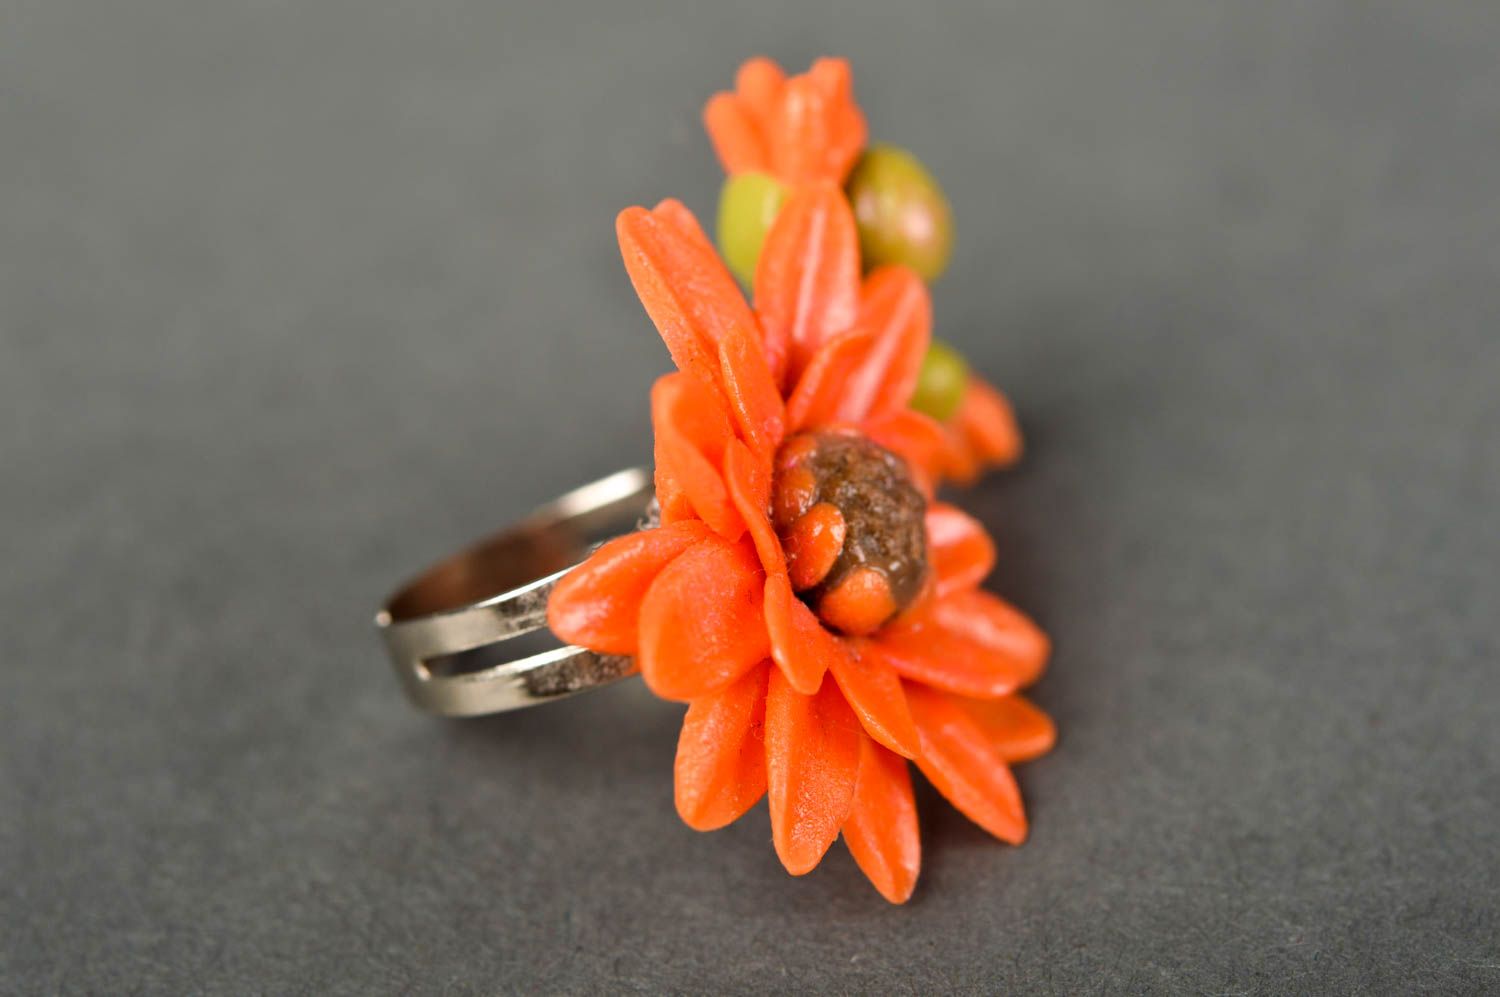 Stylish handmade flower ring artisan jewelry designs handmade accessories photo 5